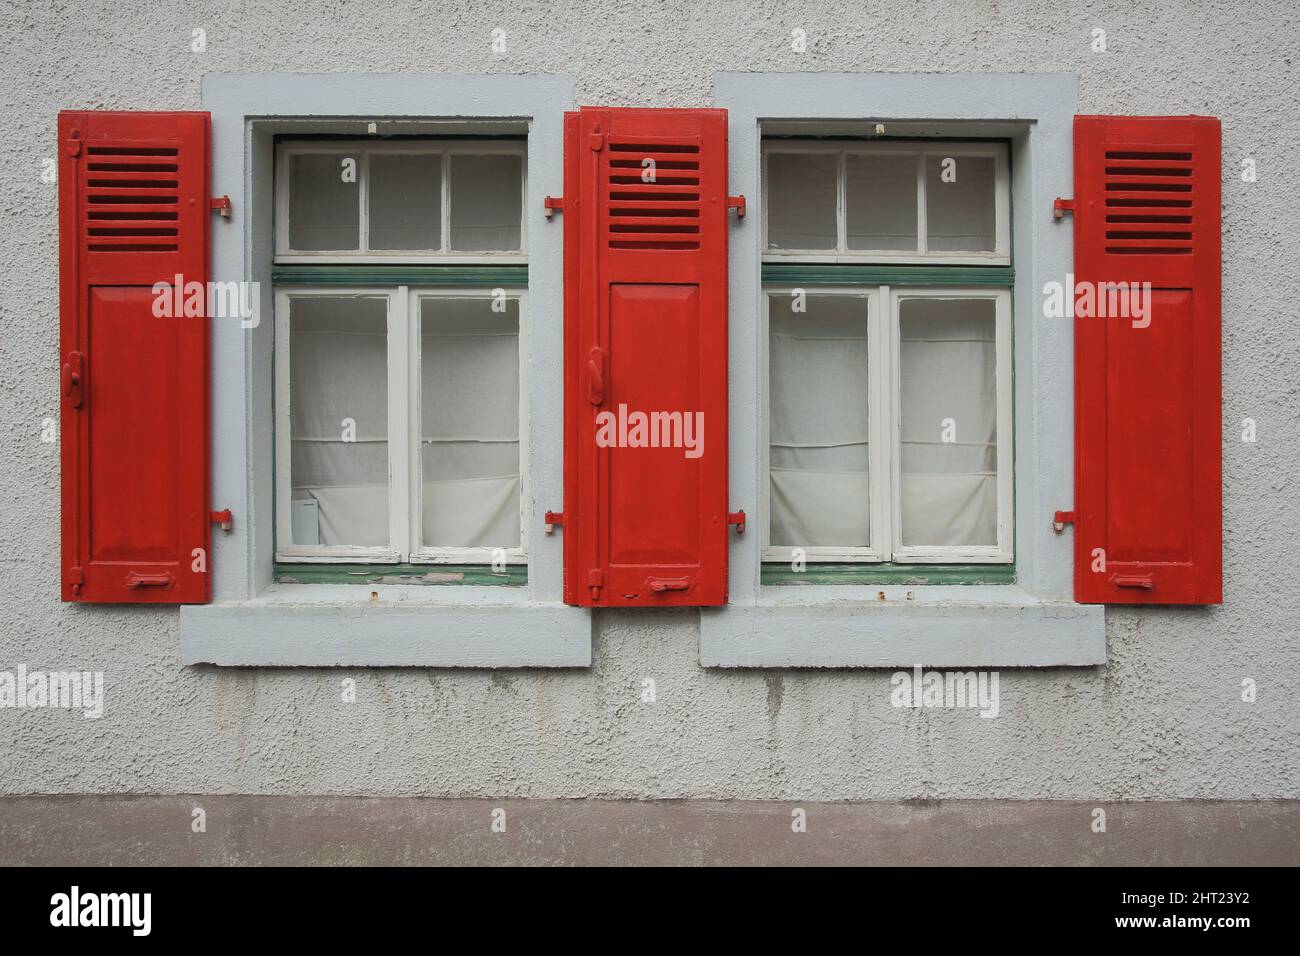 Maison aux volets rouges, Kronberg im Taunus, Hesse, Allemagne Banque D'Images